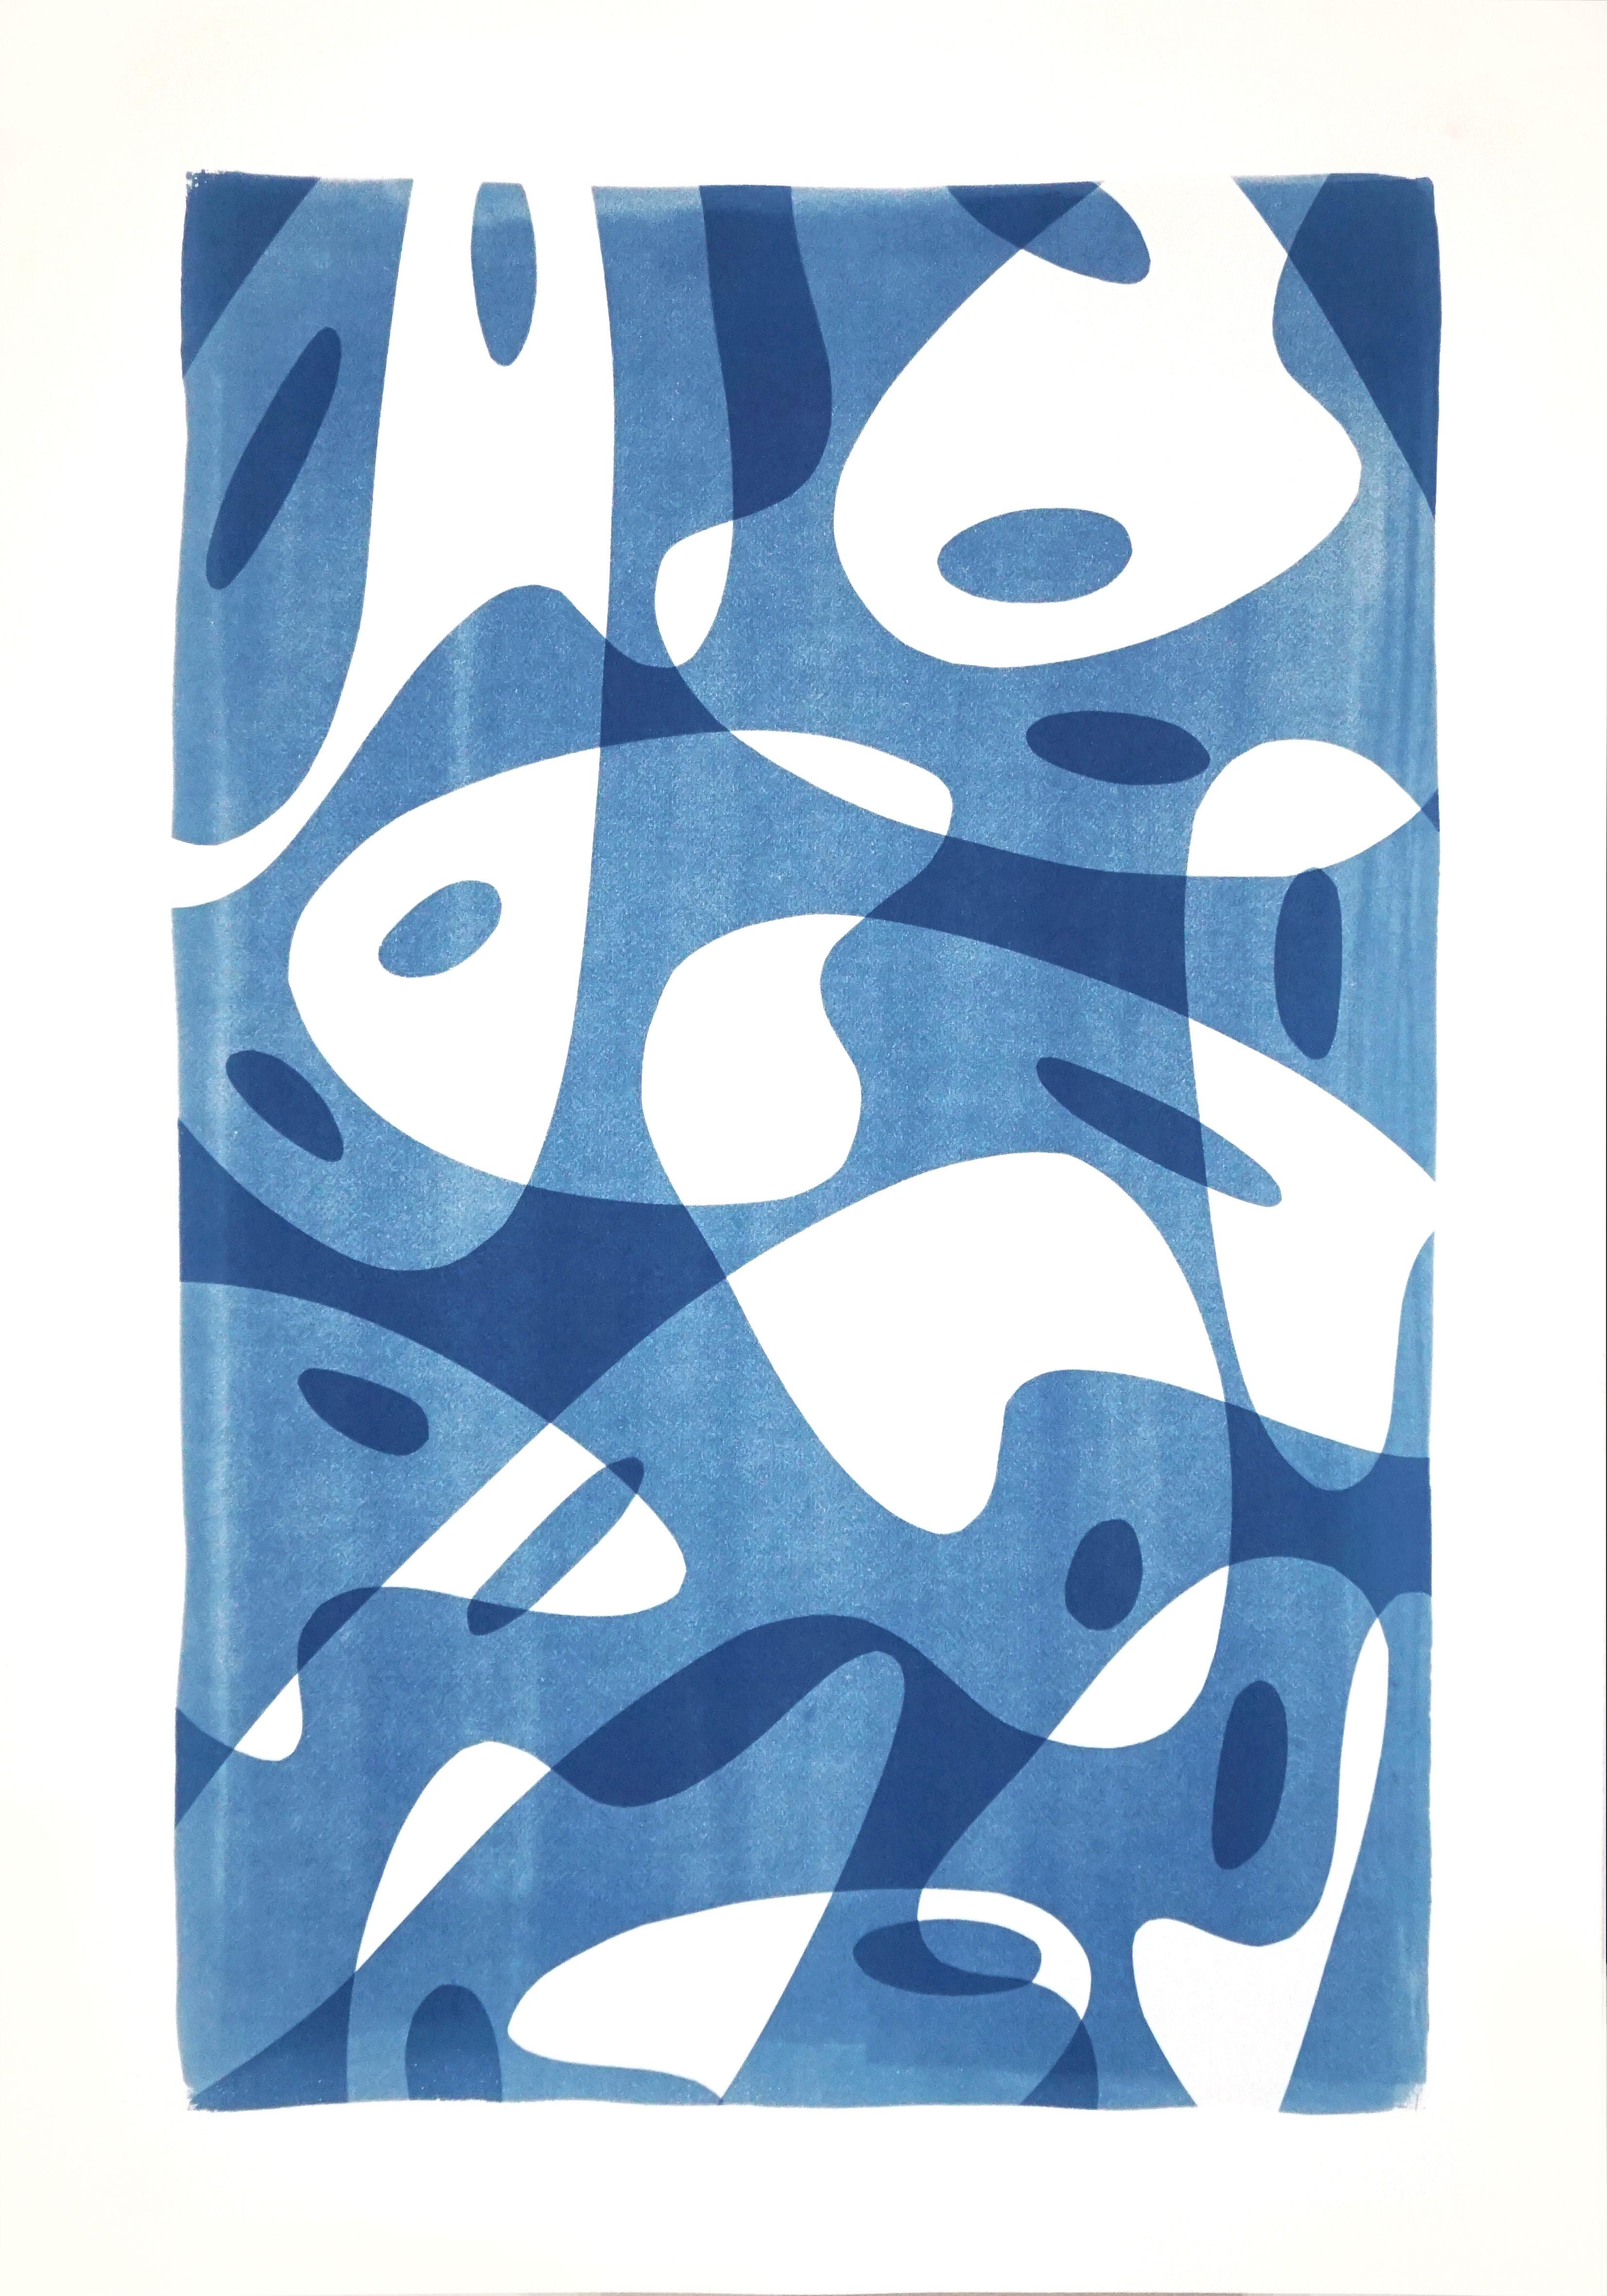 Avantgarde-Maler Avantgarde-Palettenformen in Blautönen, handgefertigte Monotypie auf Papier